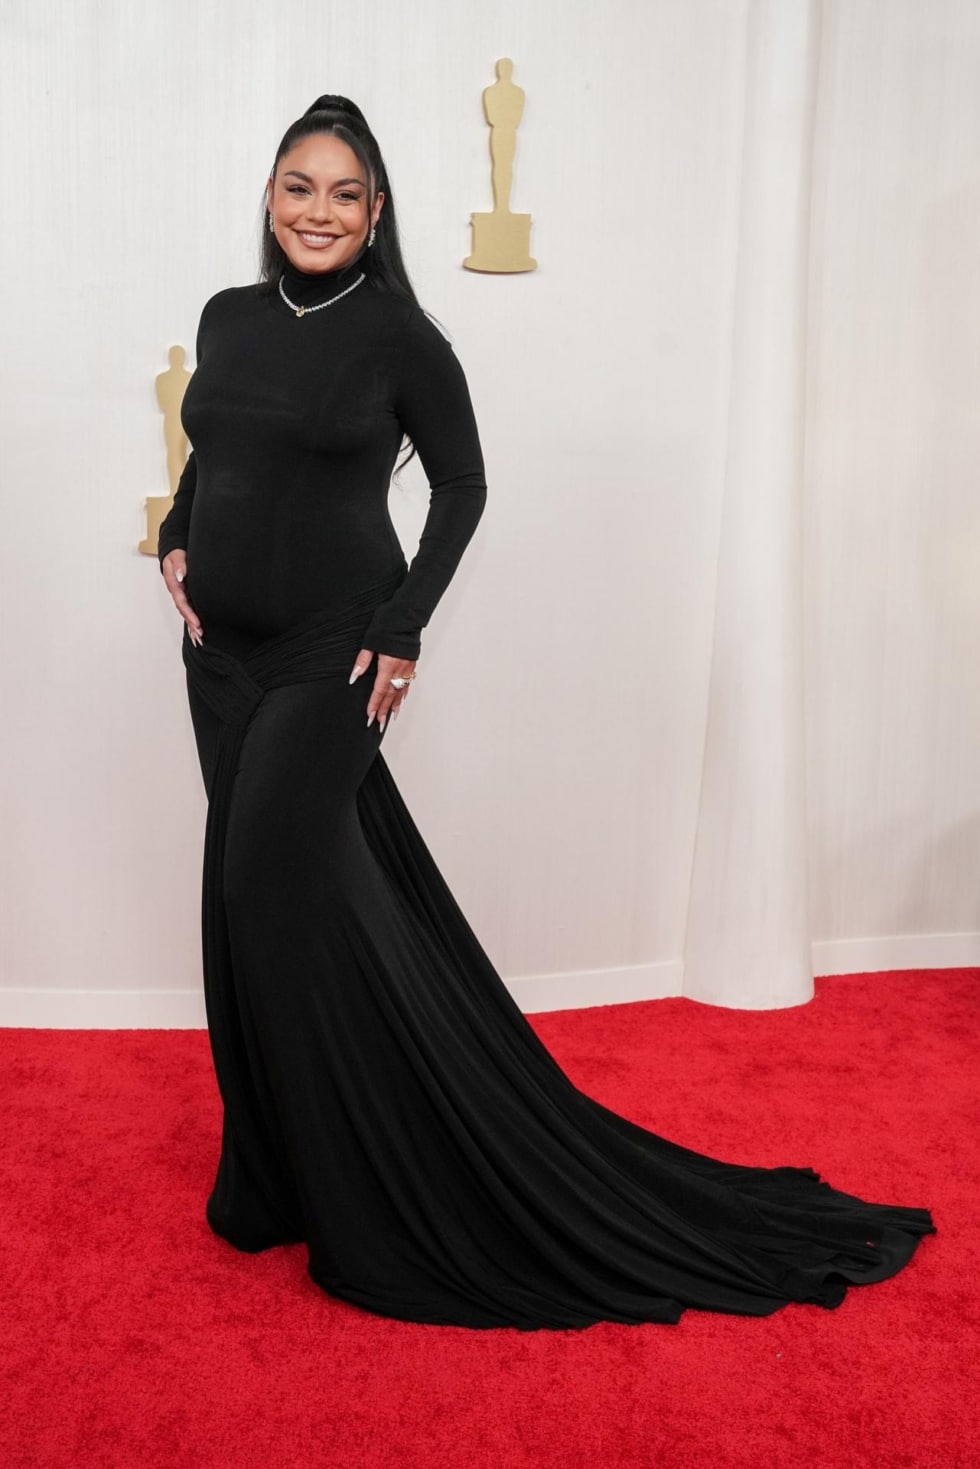 La actriz Vanessa Hudgens ha anunciado su embarazo en la alfombra roja de los Oscar.